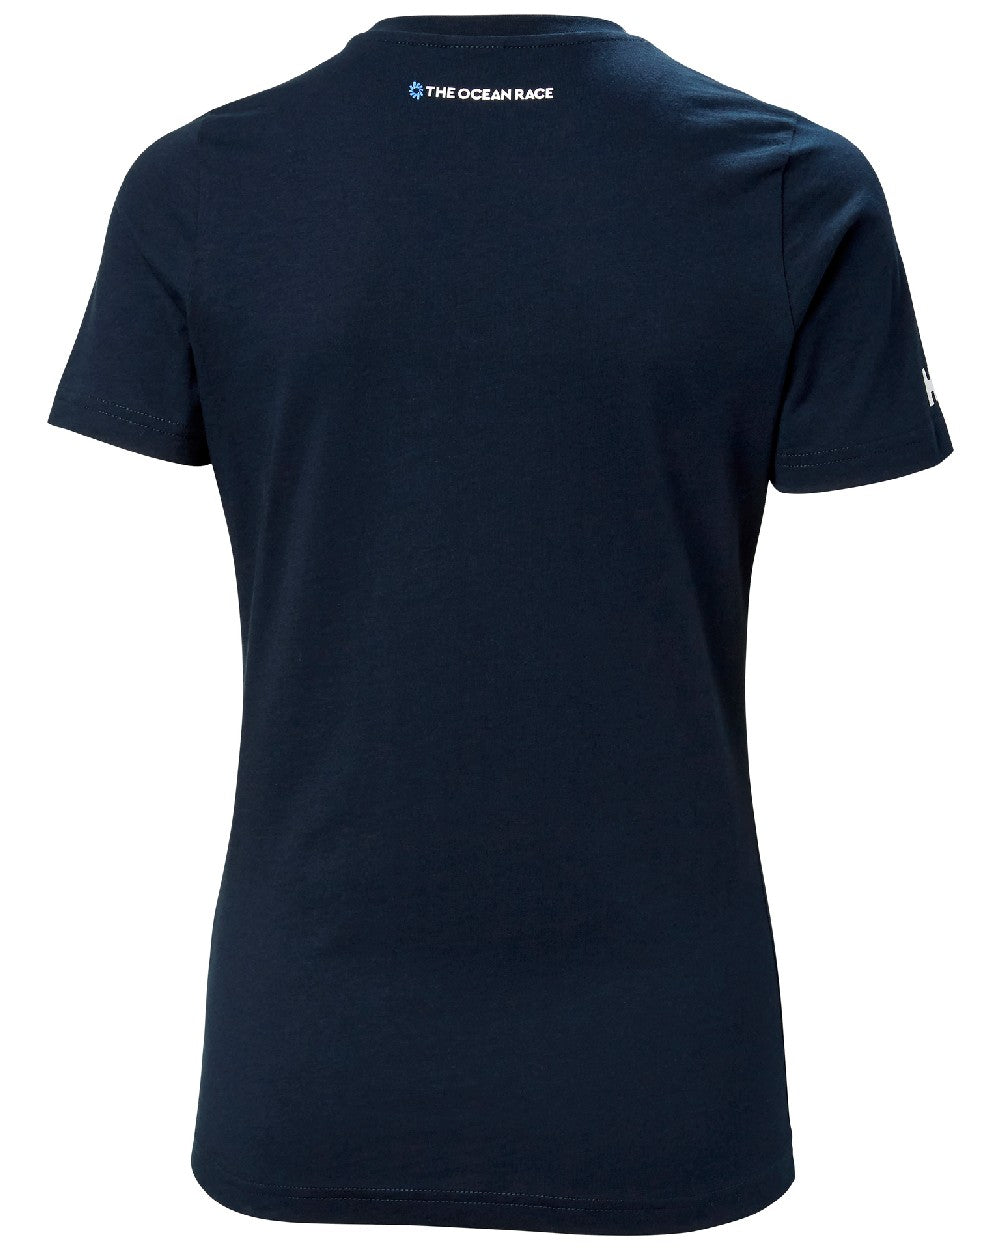 Navy v coloured Helly Hansen Womens Ocean Race T-Shirt on white background 